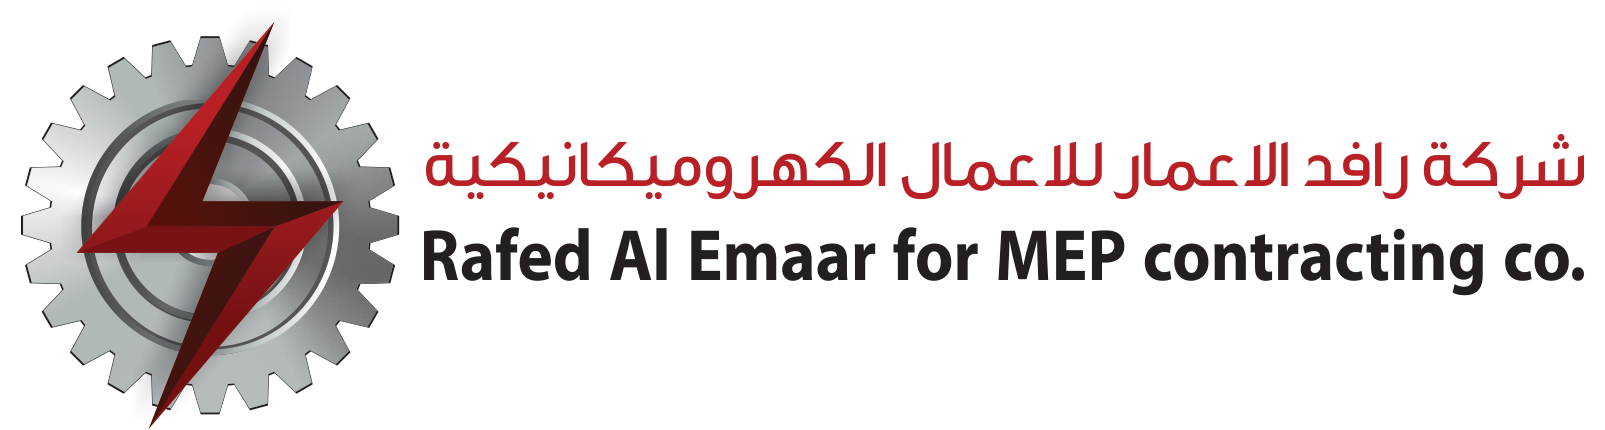 Rafed Al Emaar For MEP  Constracting co.